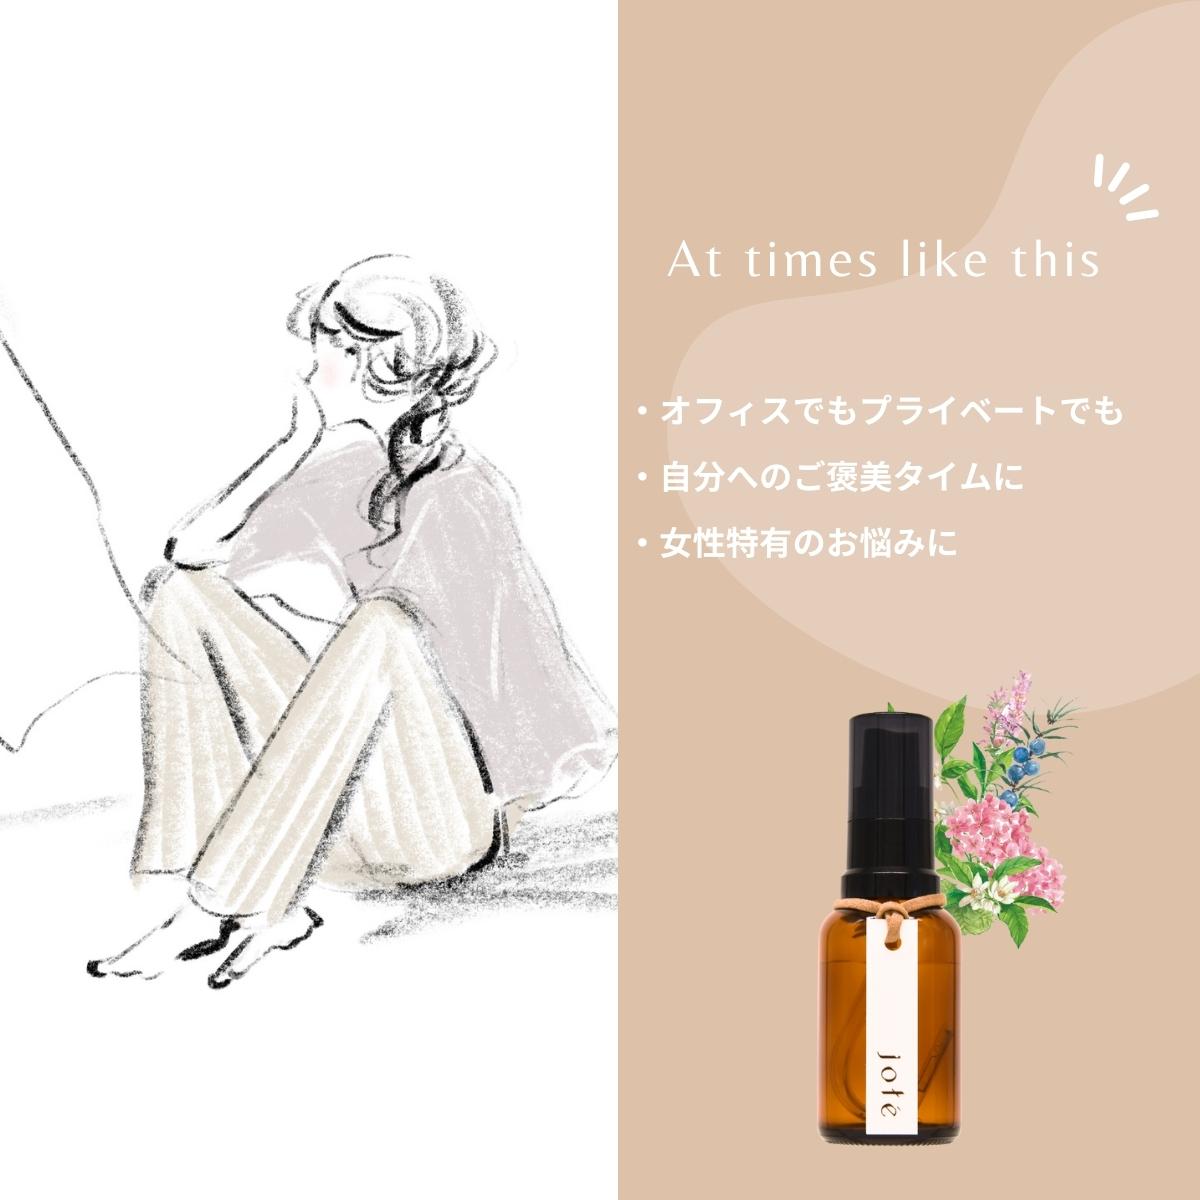 【 OFF DAY set 】Perfume 気分によって使い分けるお試し5ml 3本セット